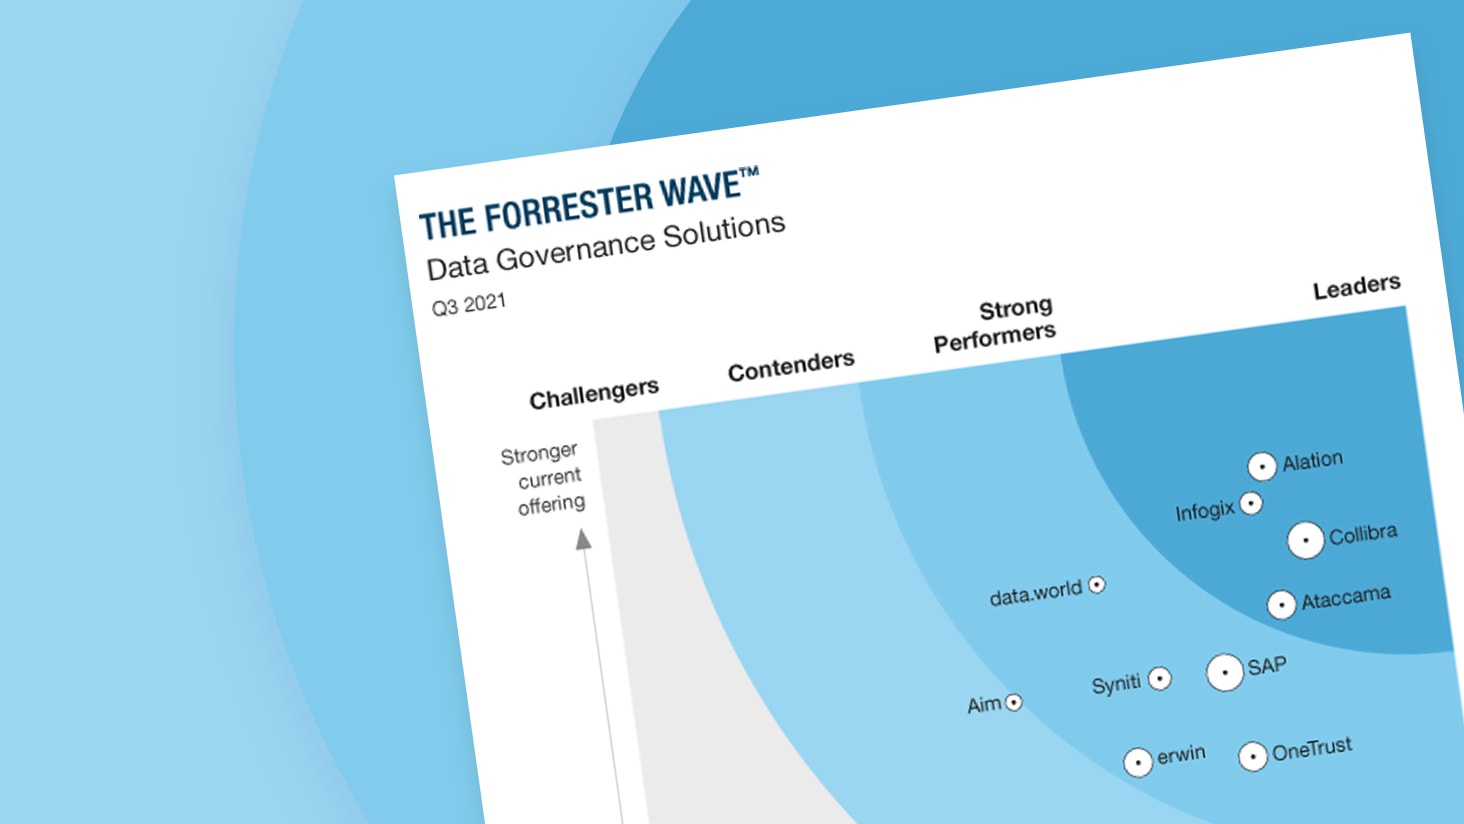 Forrester Data Governance Wave